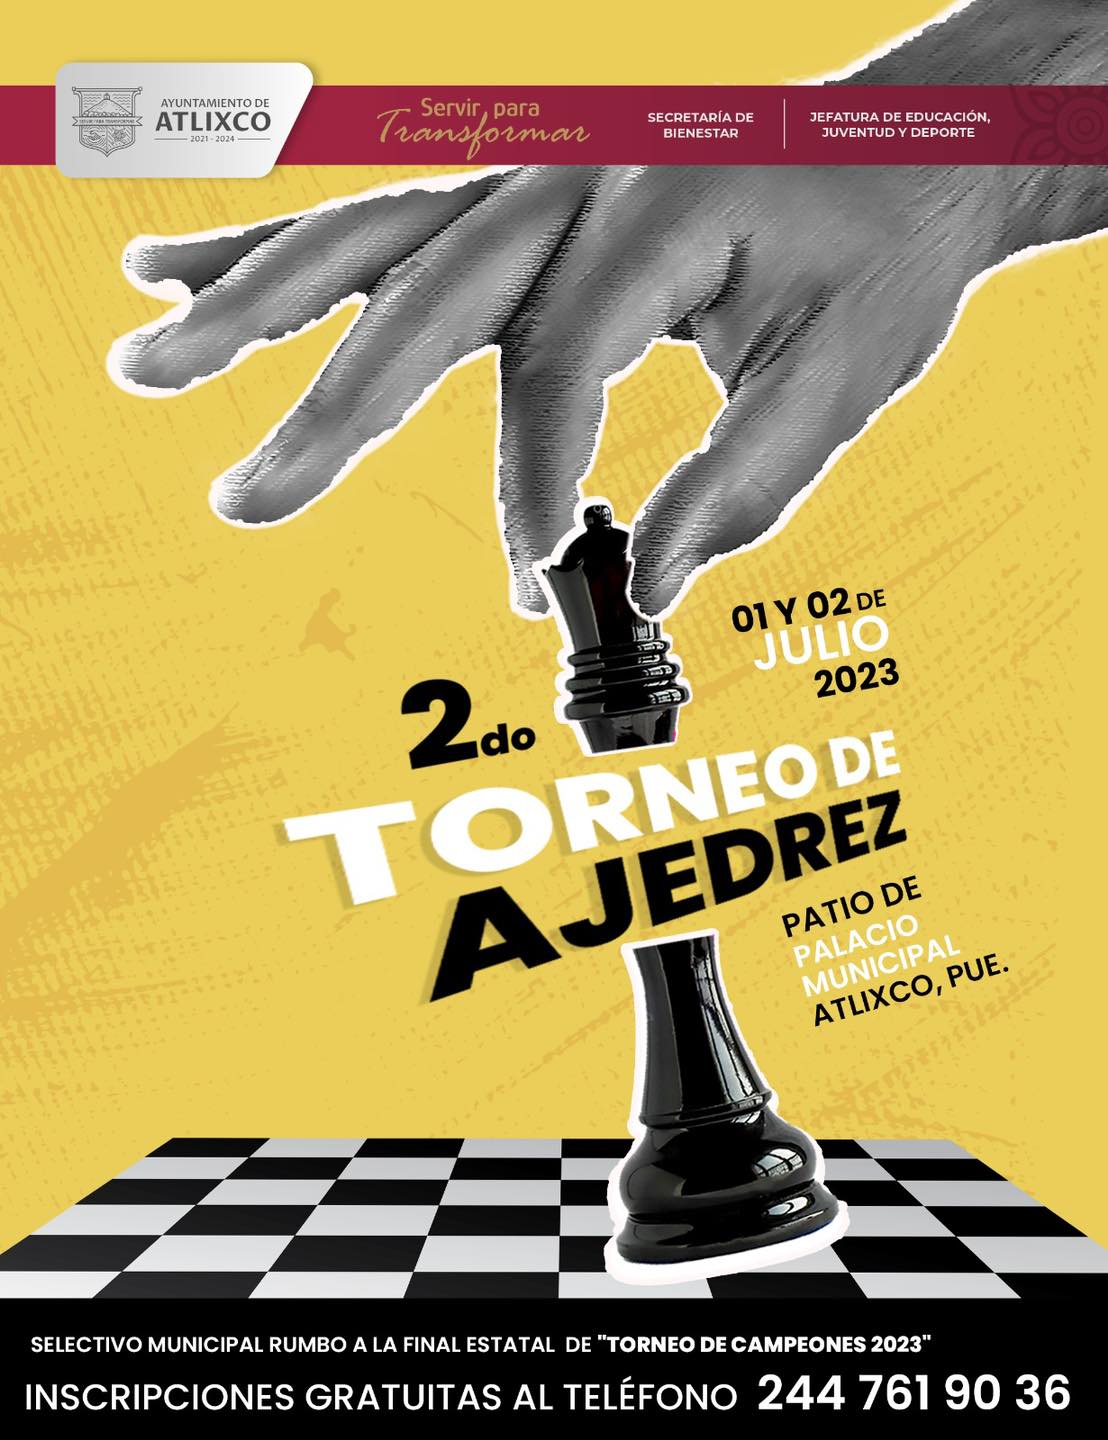 Gobierno de Atlixco invita a participar en el Segundo Torneo de Ajedrez 2023